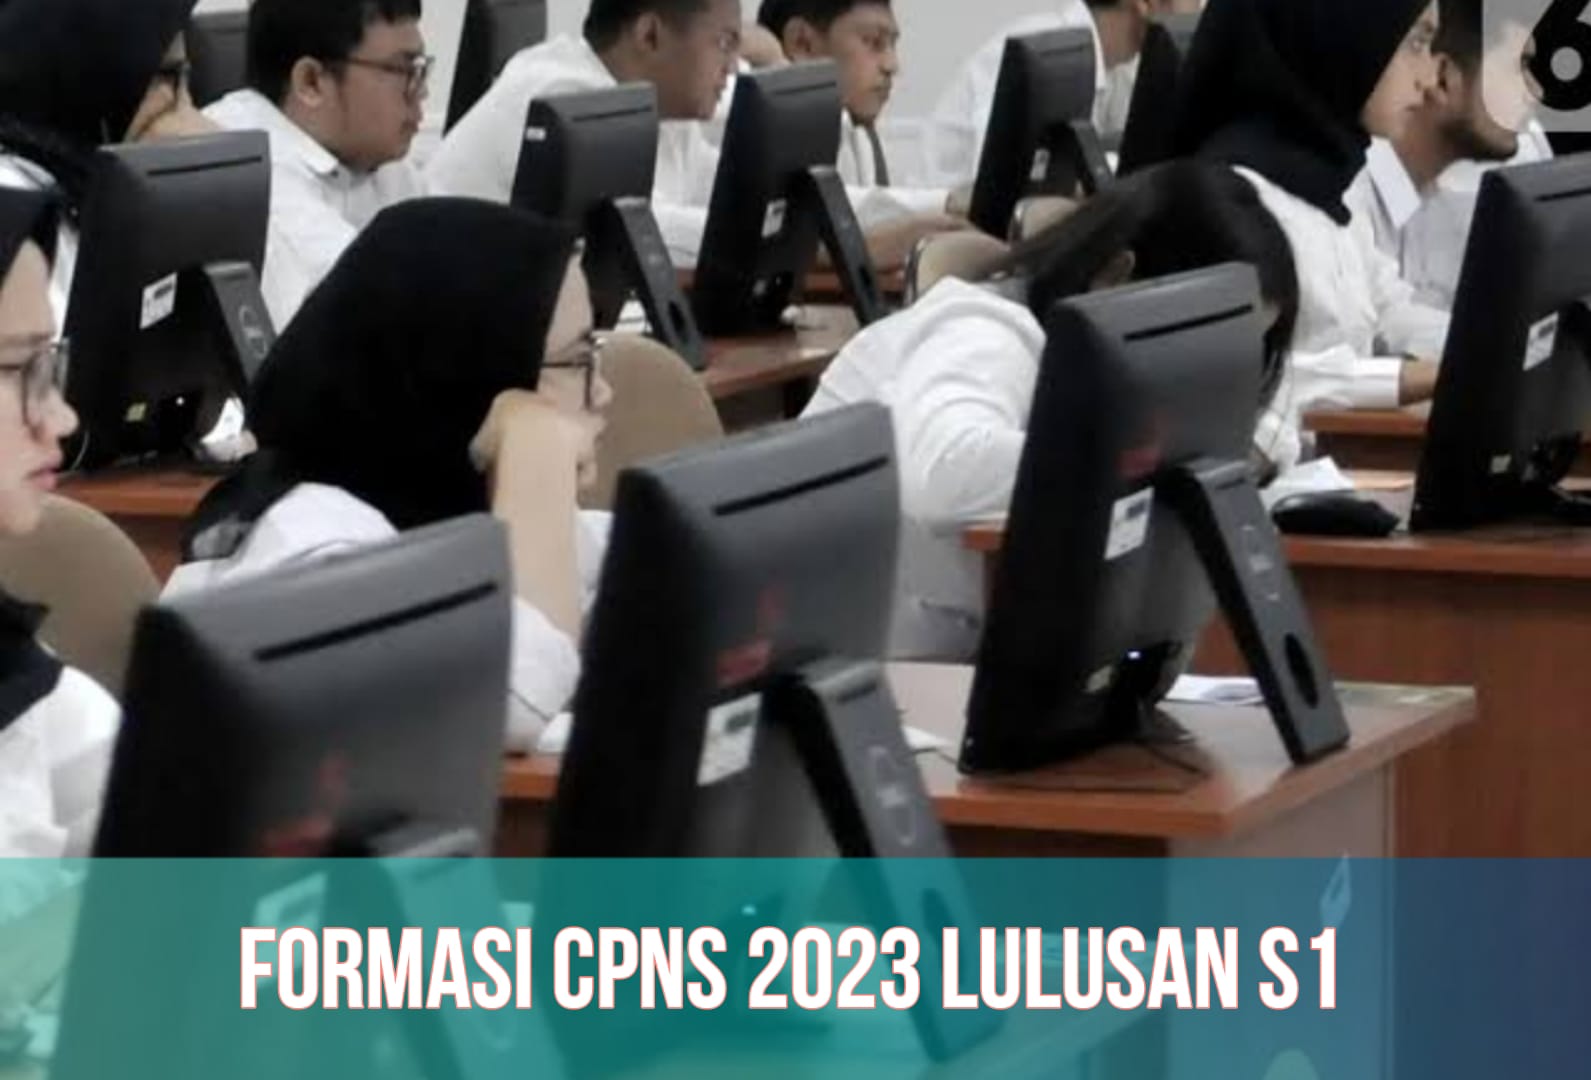 CPNS 2023 Dibuka untuk 1 Juta Lebih Formasi, Lulusan S1 Pendidikan hingga Kesehatan Jadi Prioritas